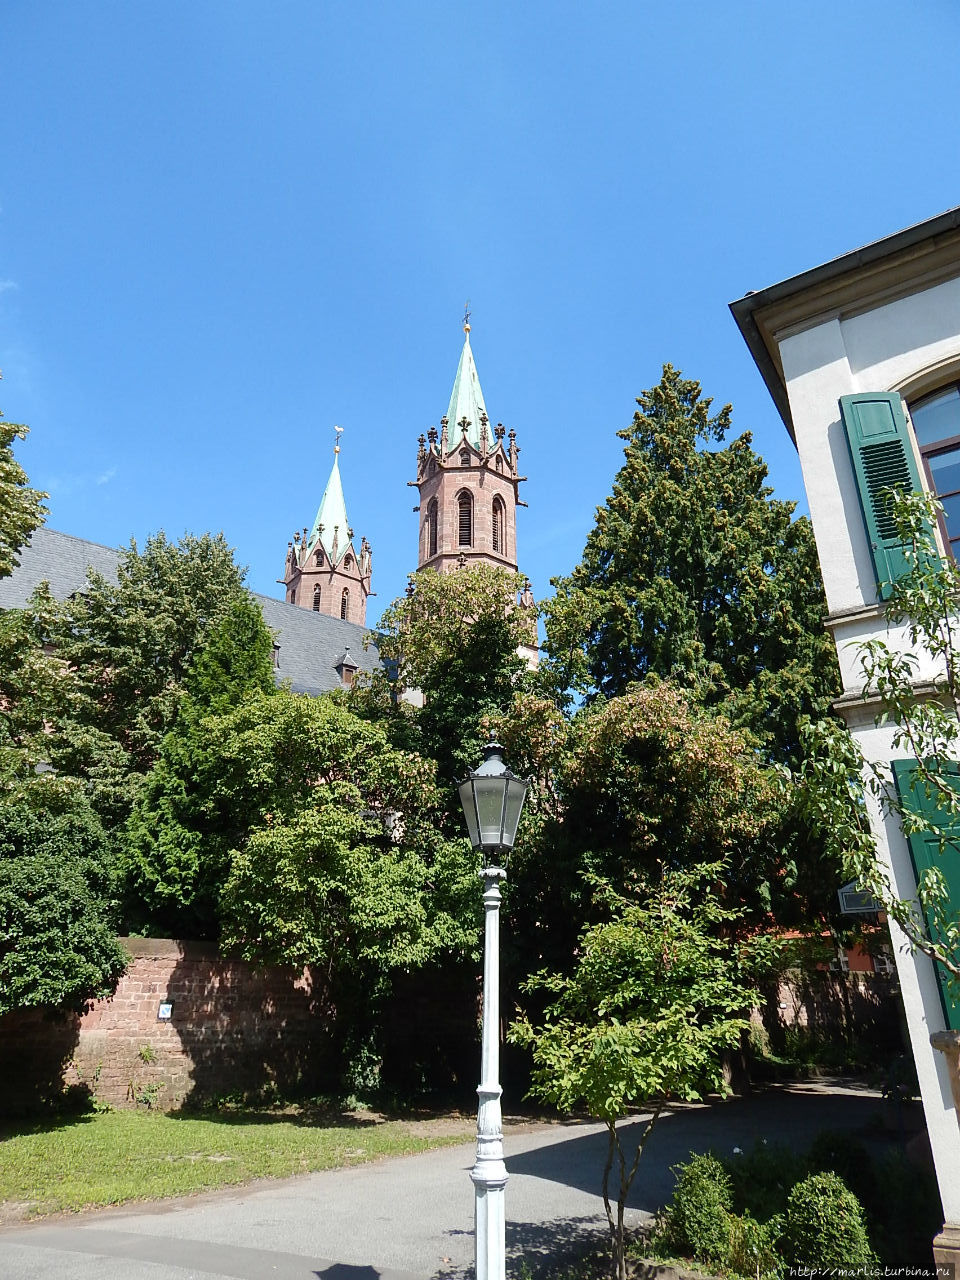 Католическая церковь Св. Галла, ранее кафедральный собор Ладенбург, Германия